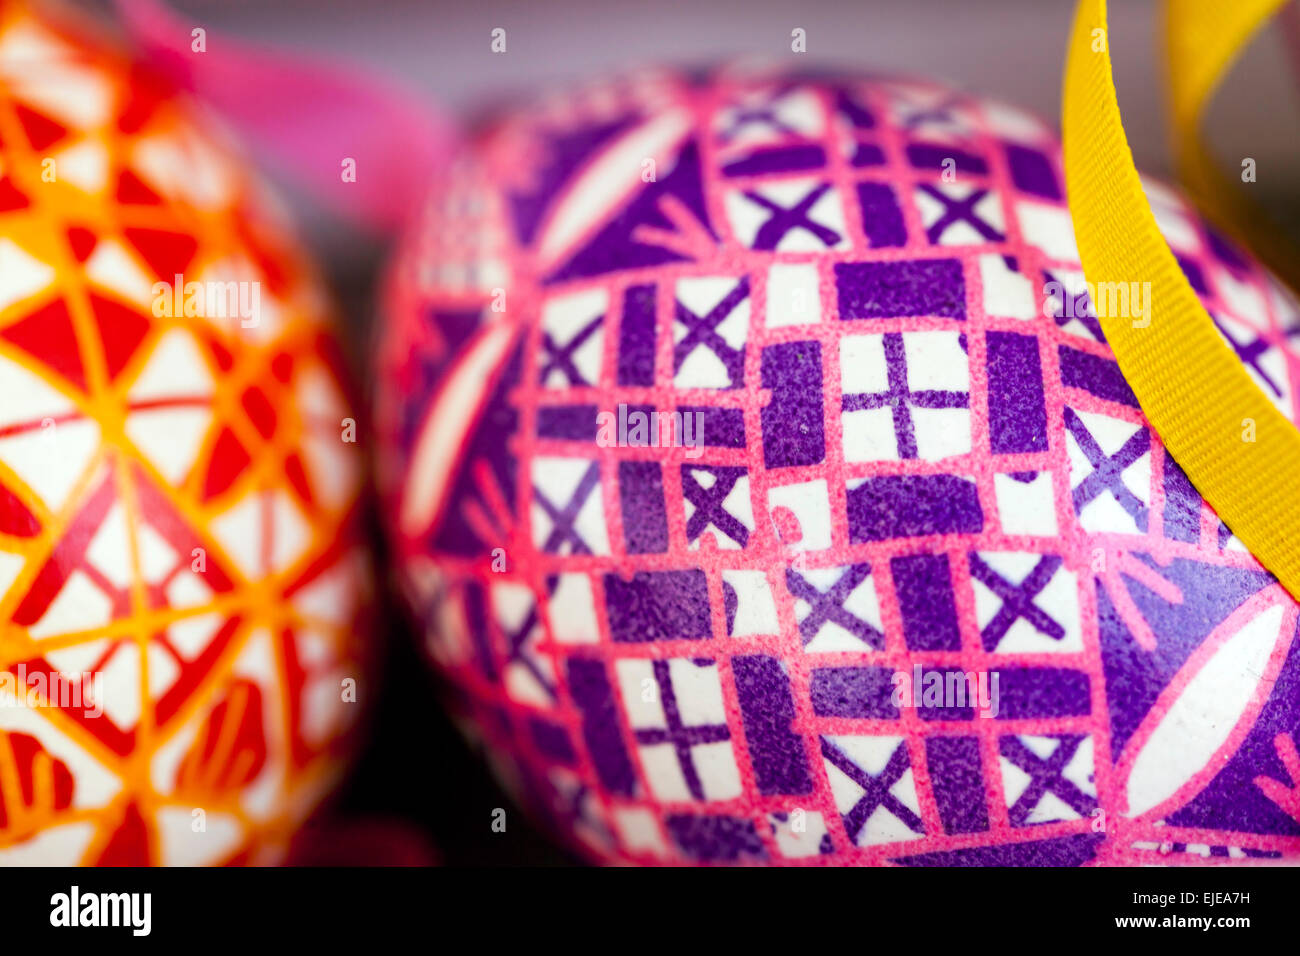 Tradición Checa, huevos de Pascua pintados de colores, Praga República Checa, Europa Foto de stock